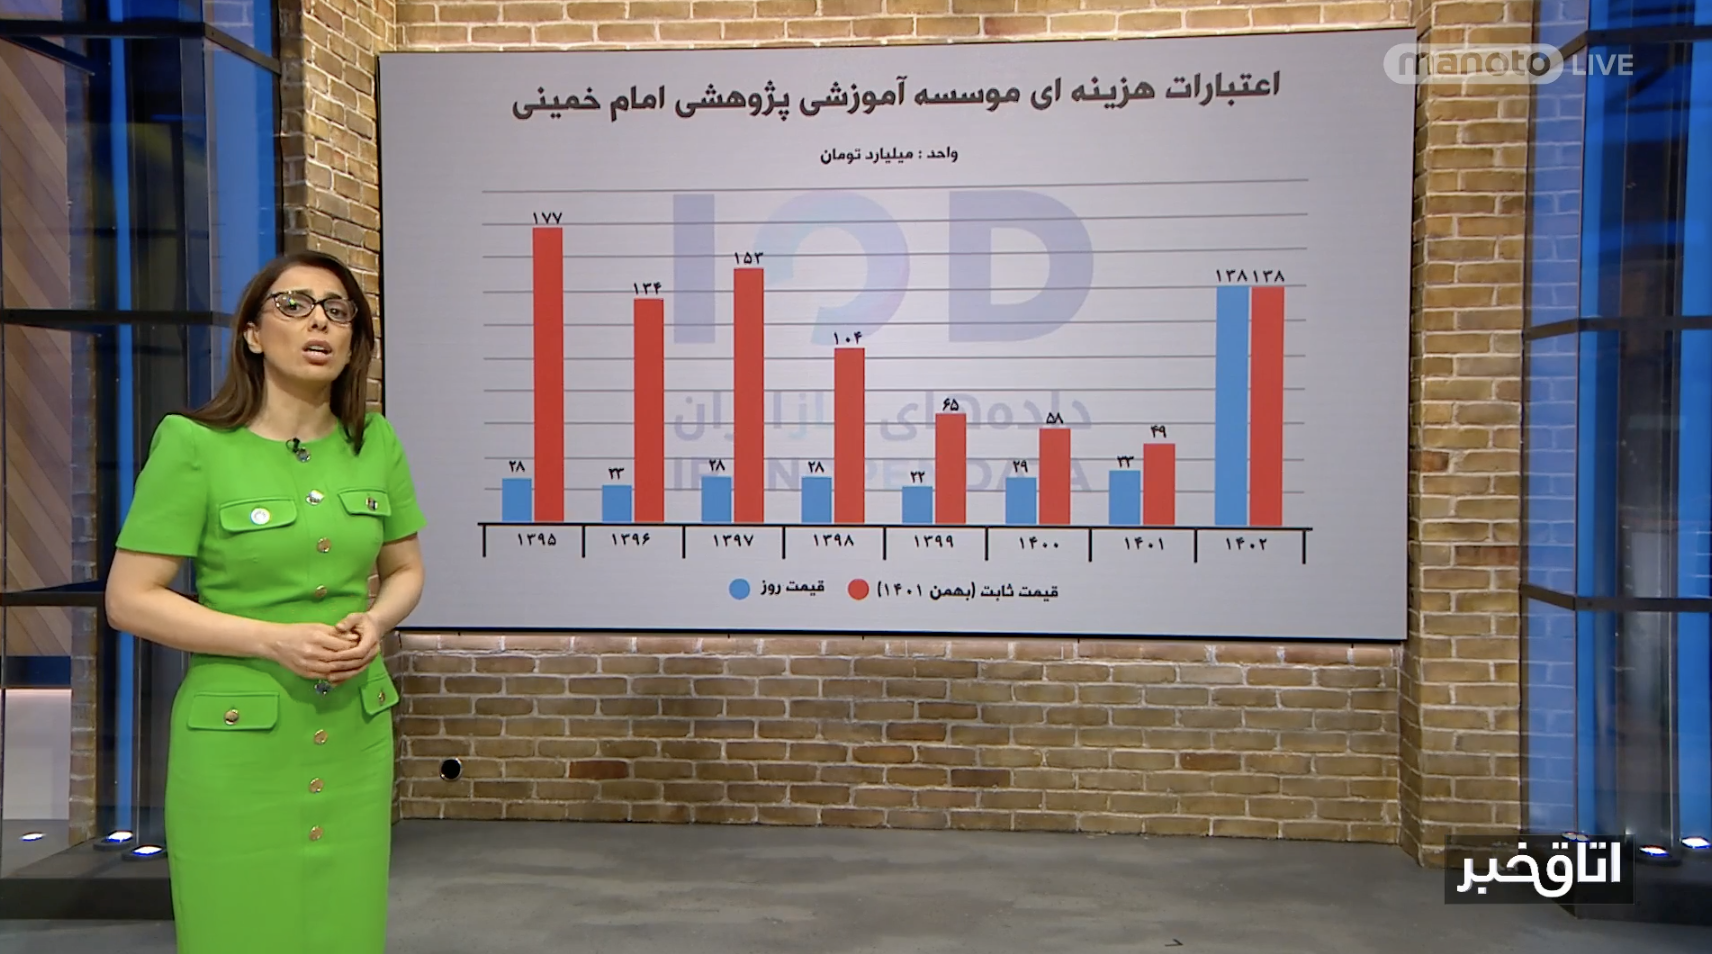 بودجه نجومی موسسه آموزشی مصباح یزدی